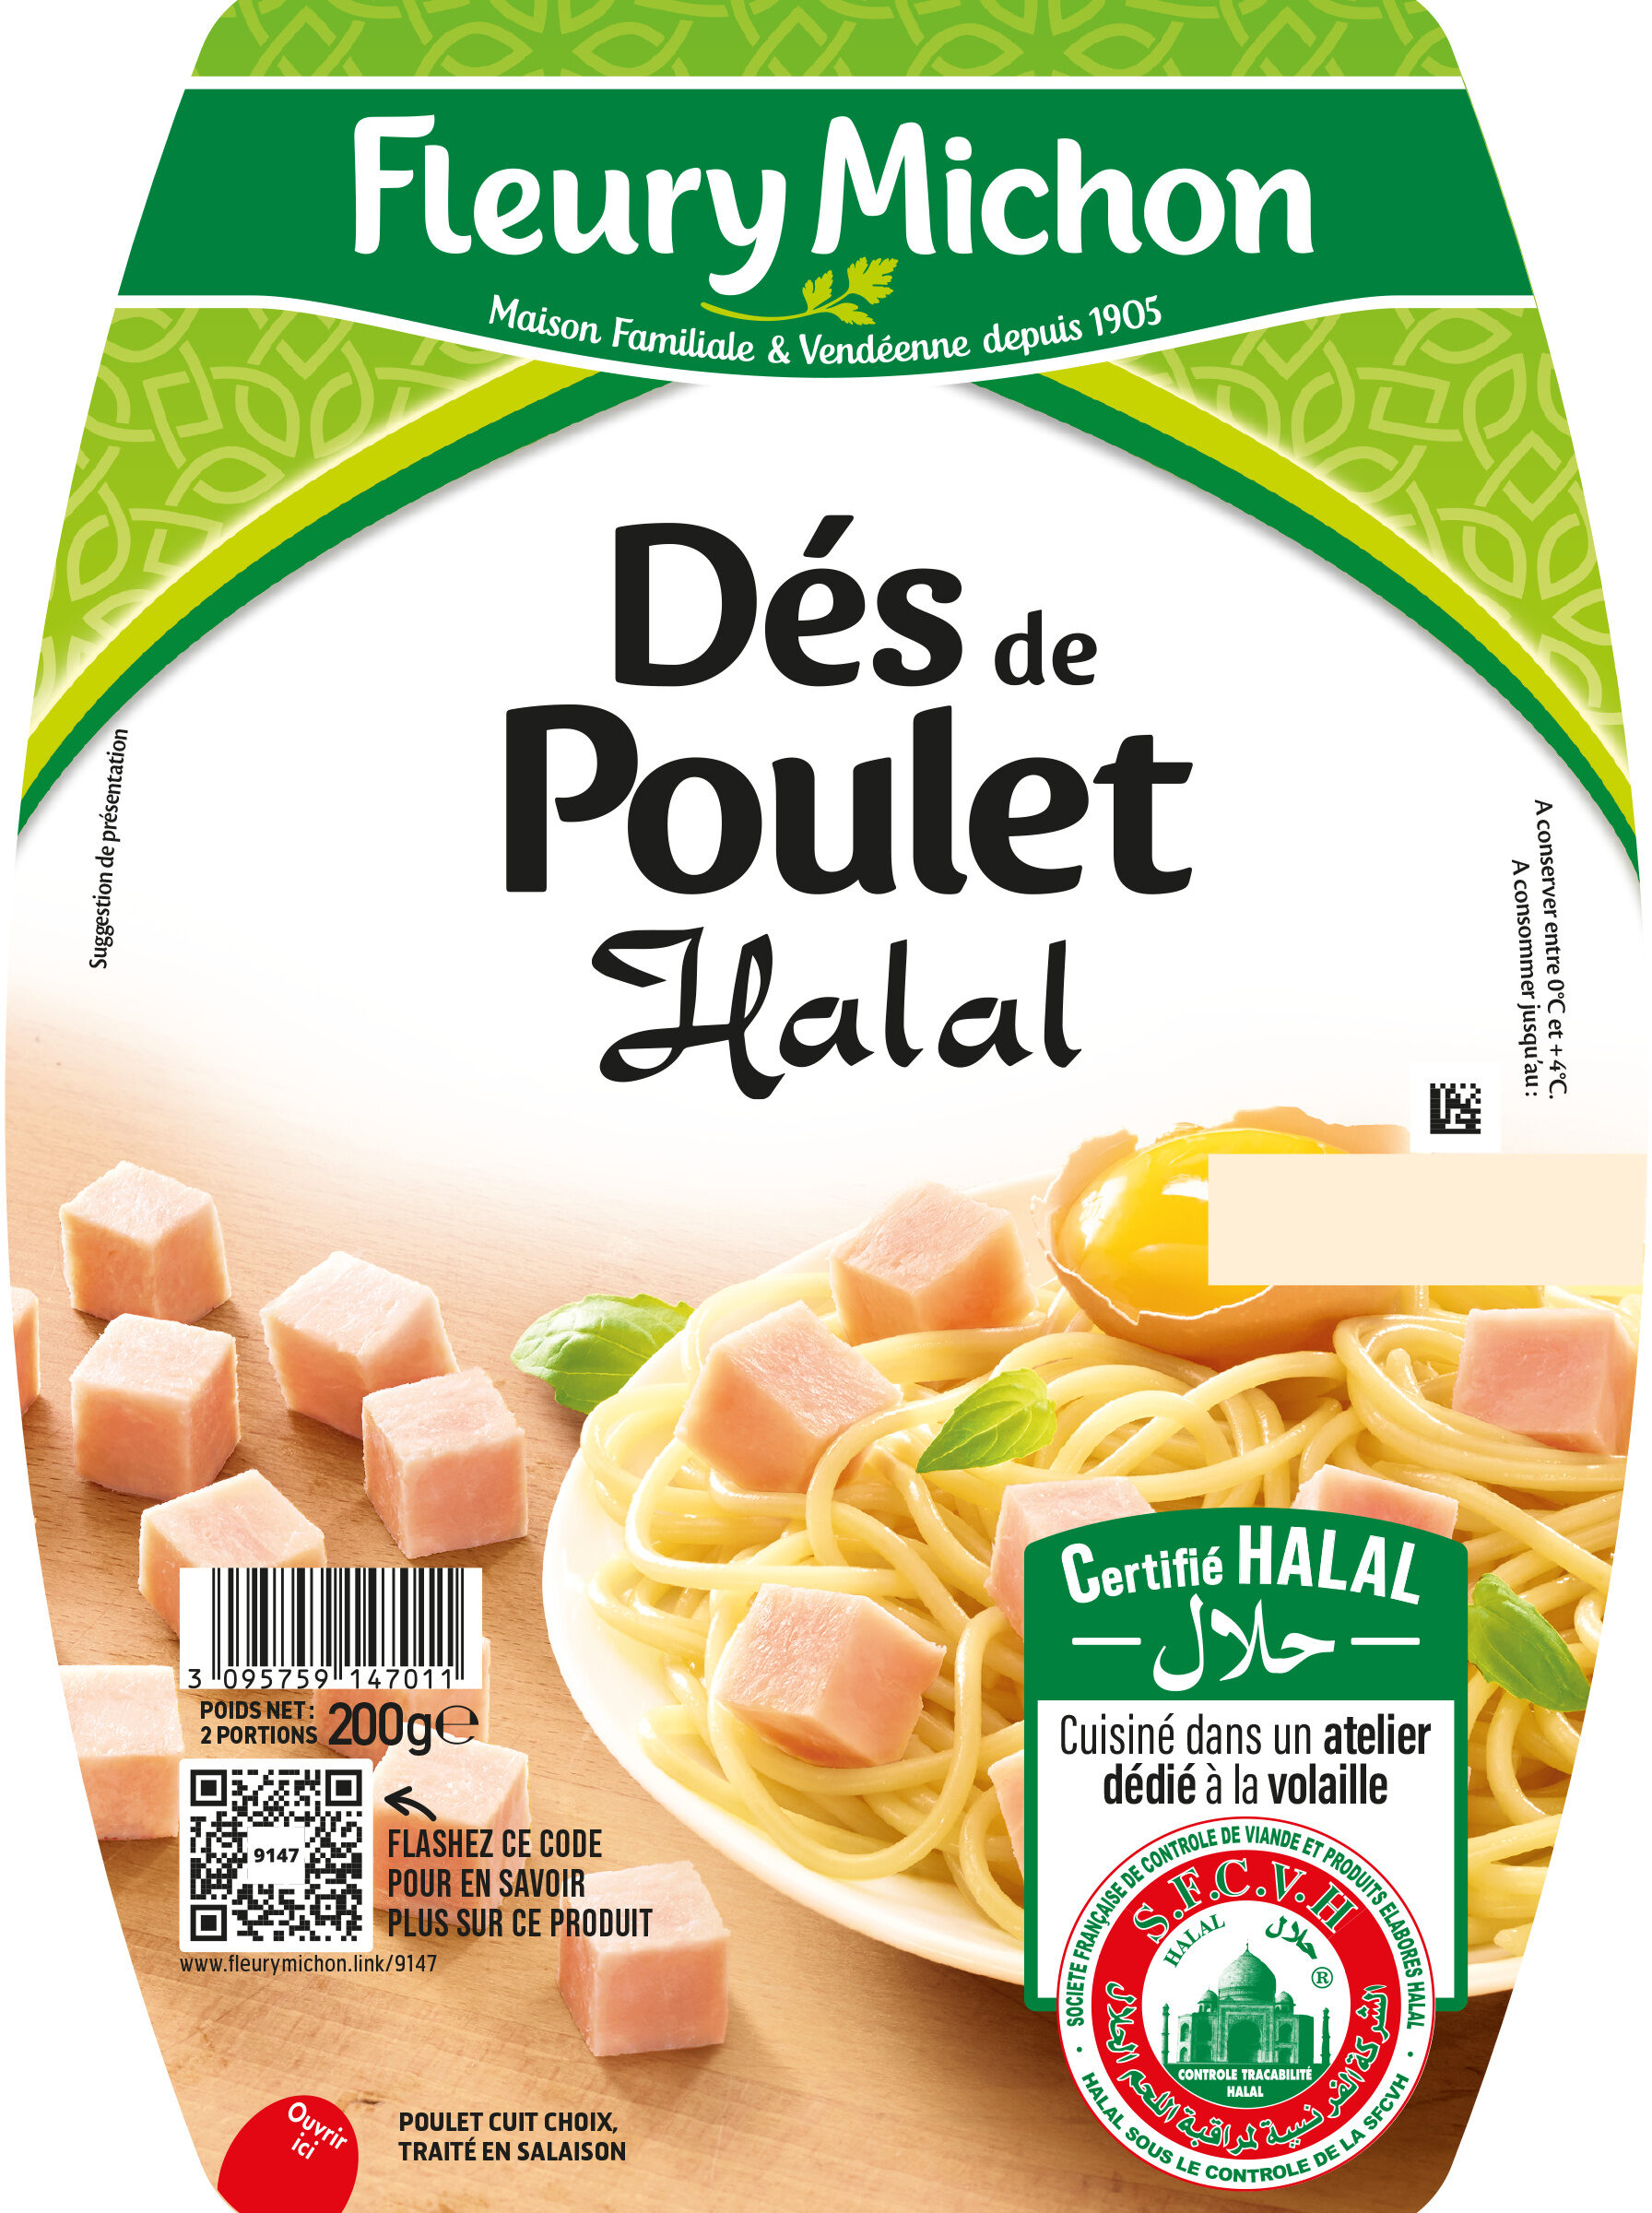 Dés de Poulet - Halal - Product - fr